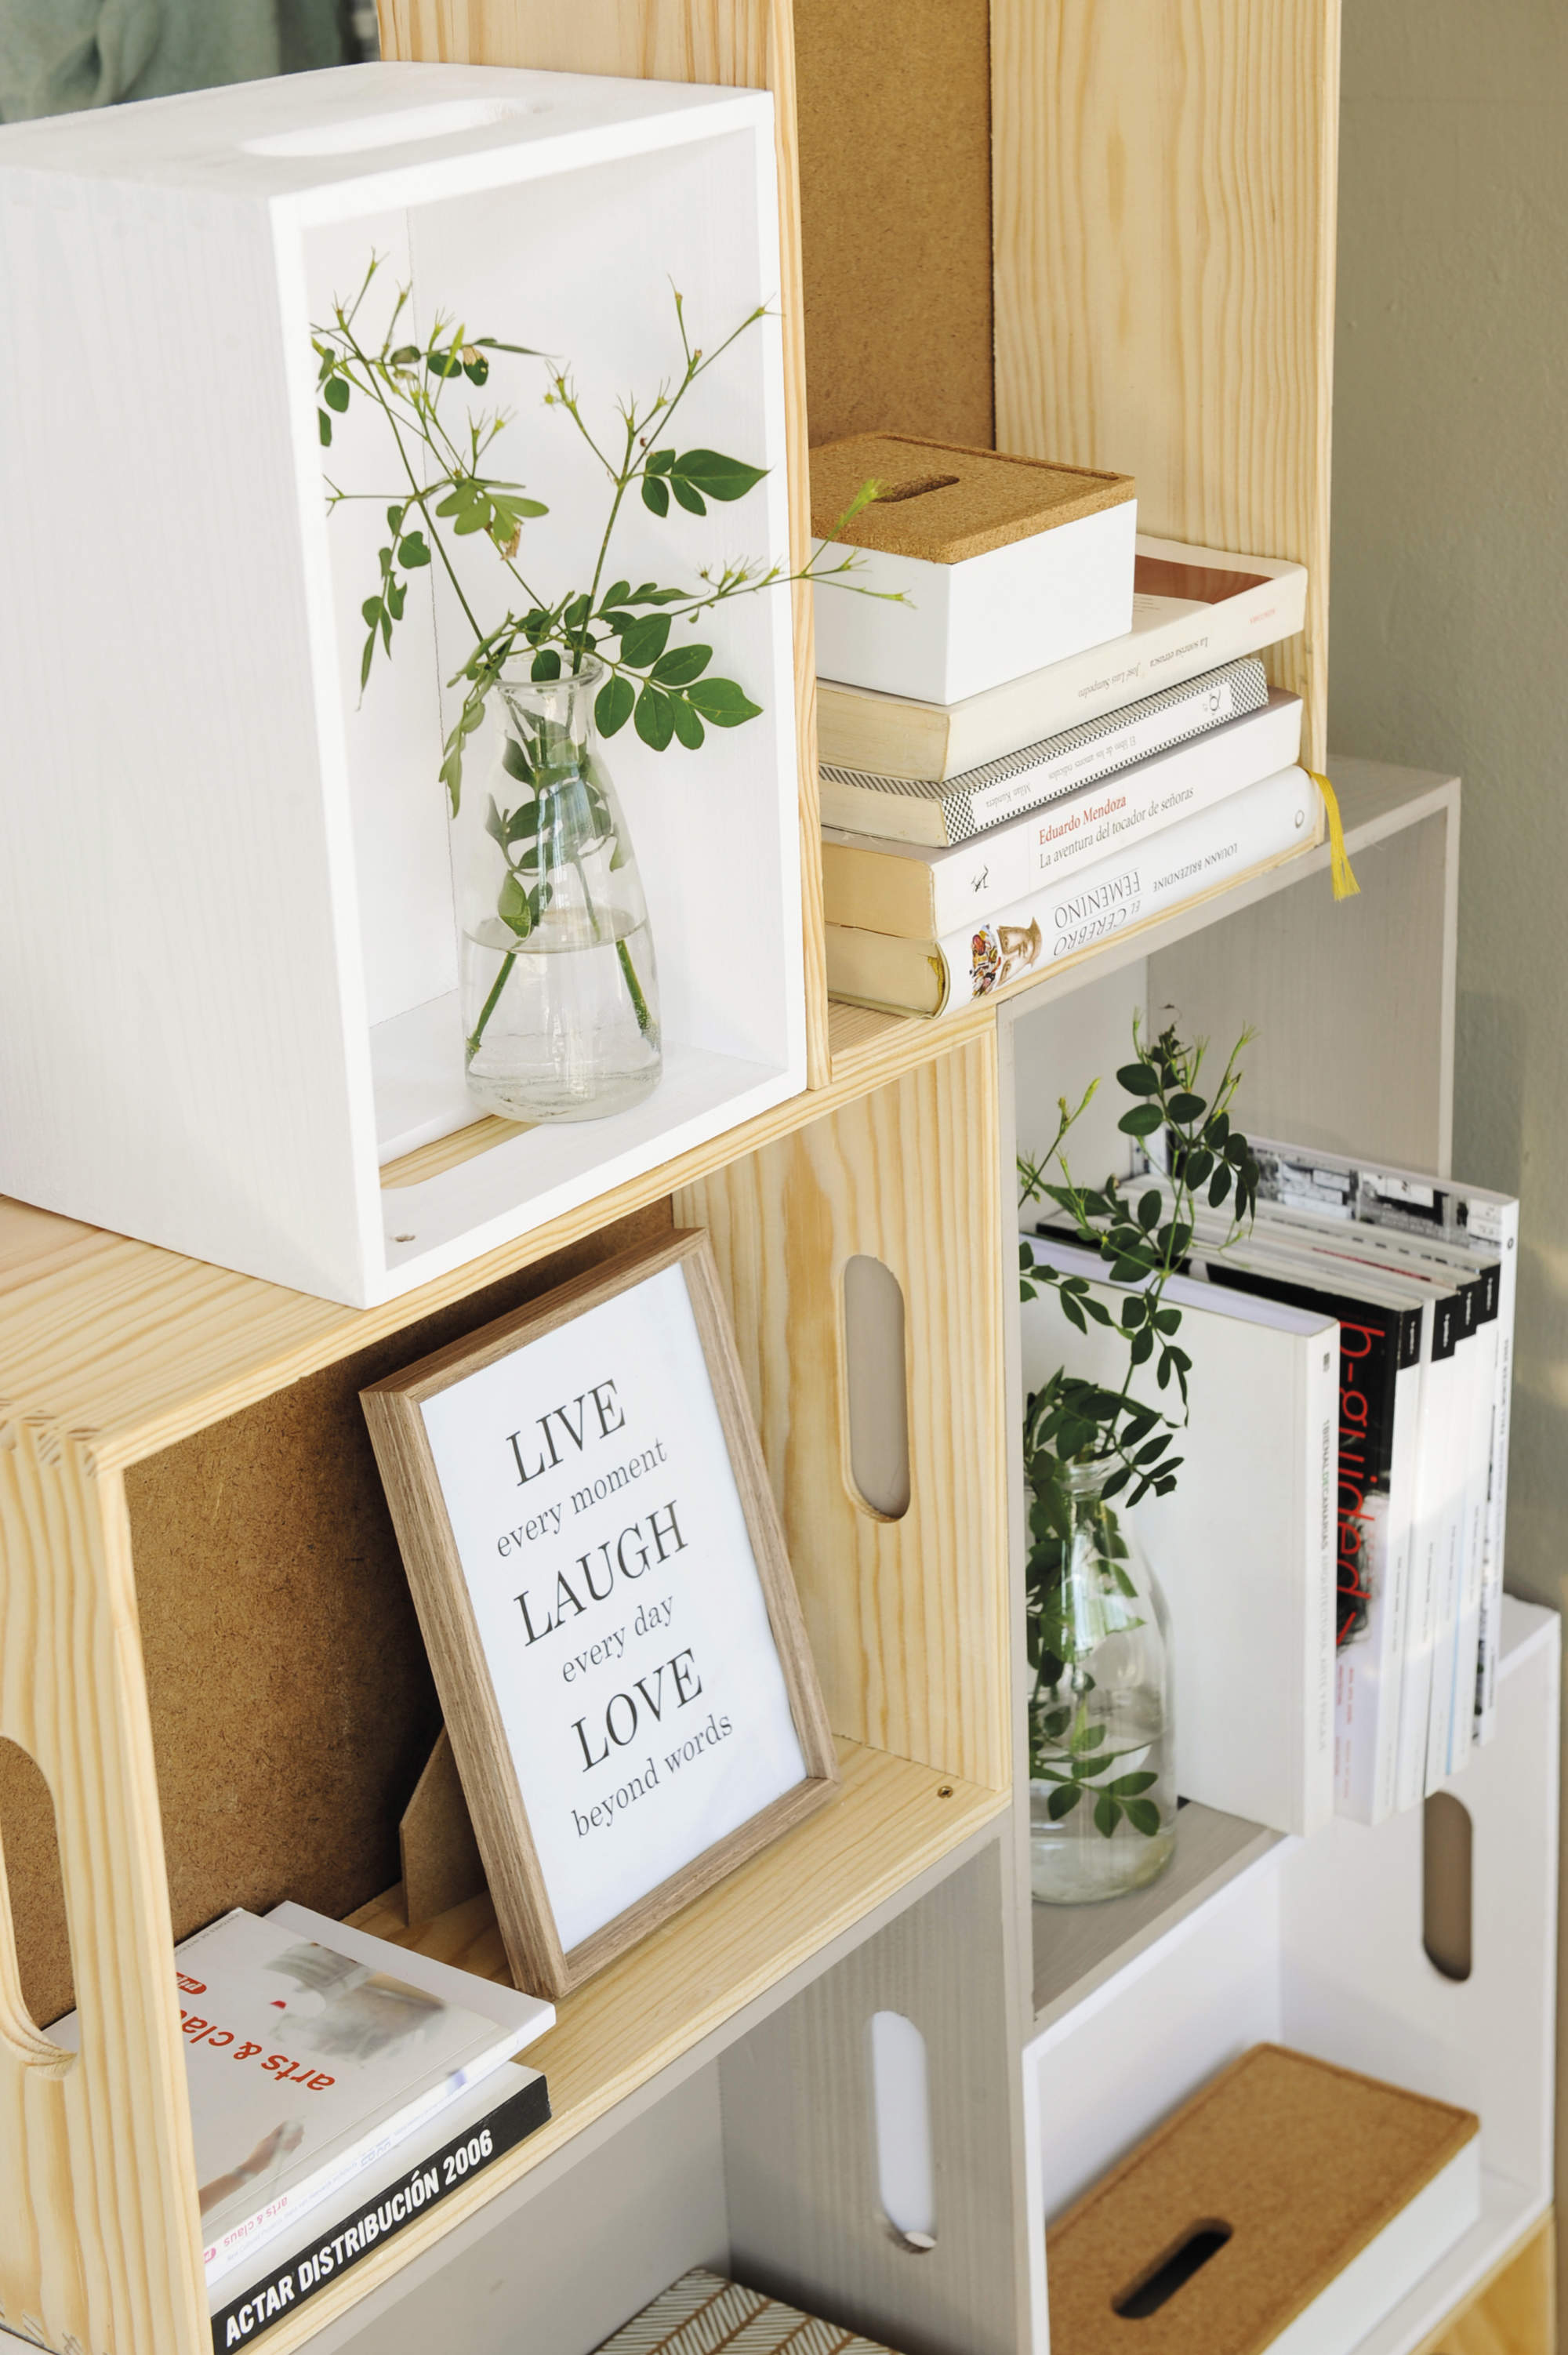 Libros en horizontal y vertical en una estantería.